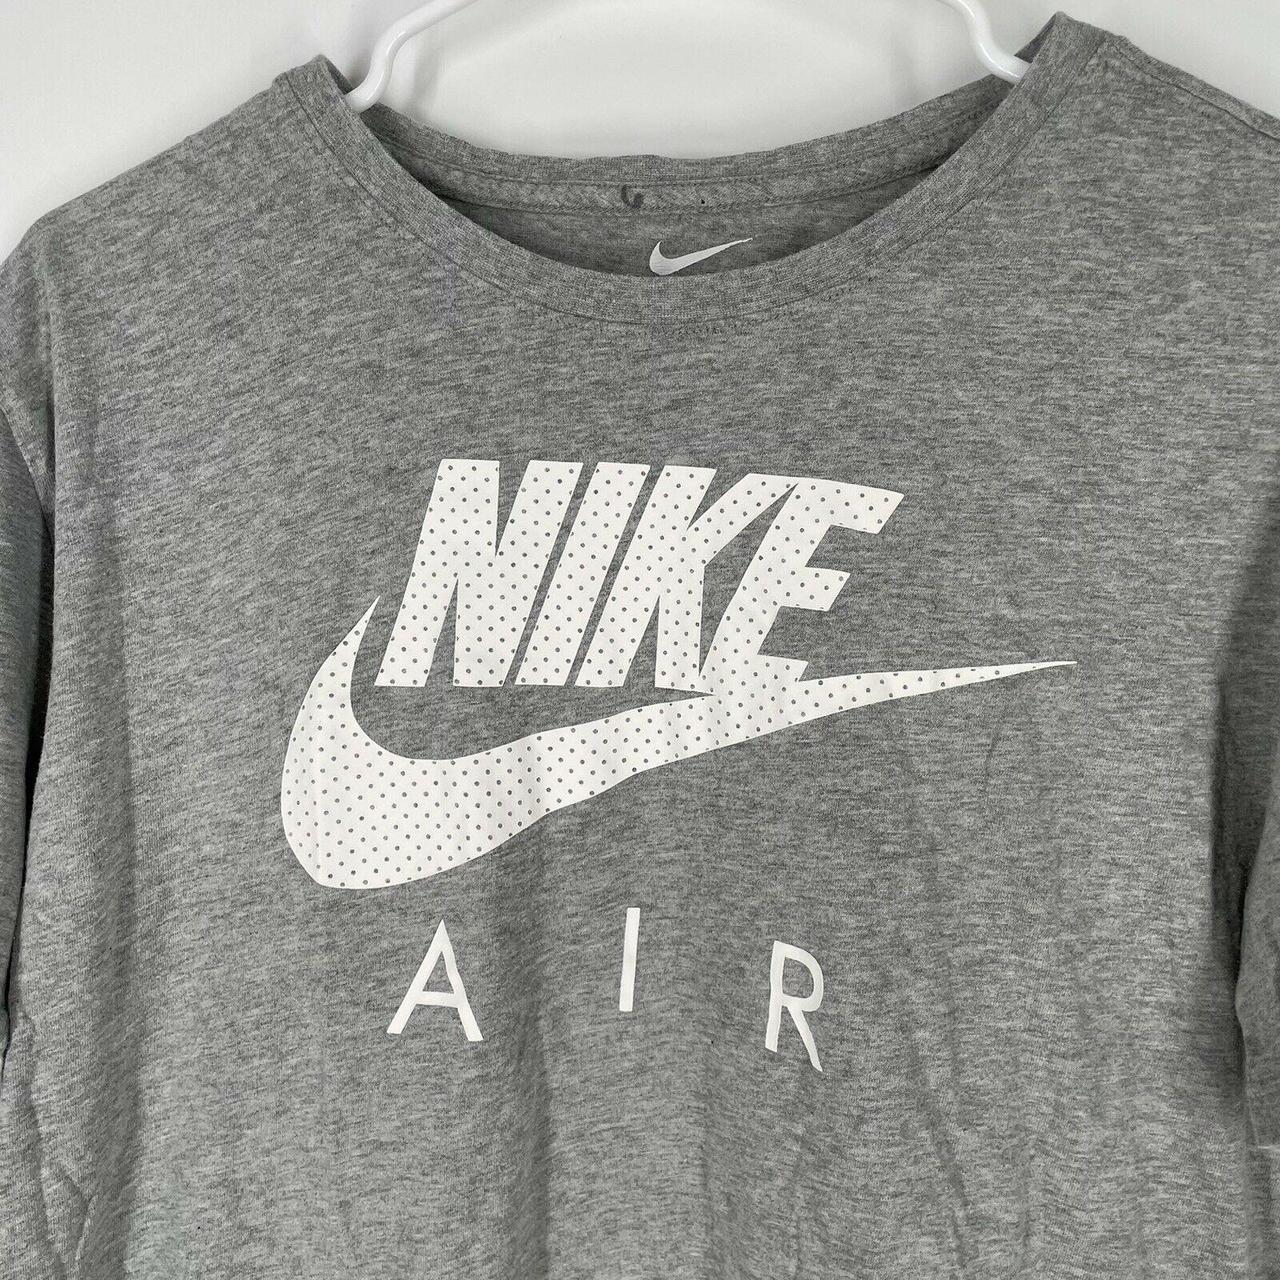 Nike Air Men’s The Nike Tee Short Sleeve Grey... - Depop